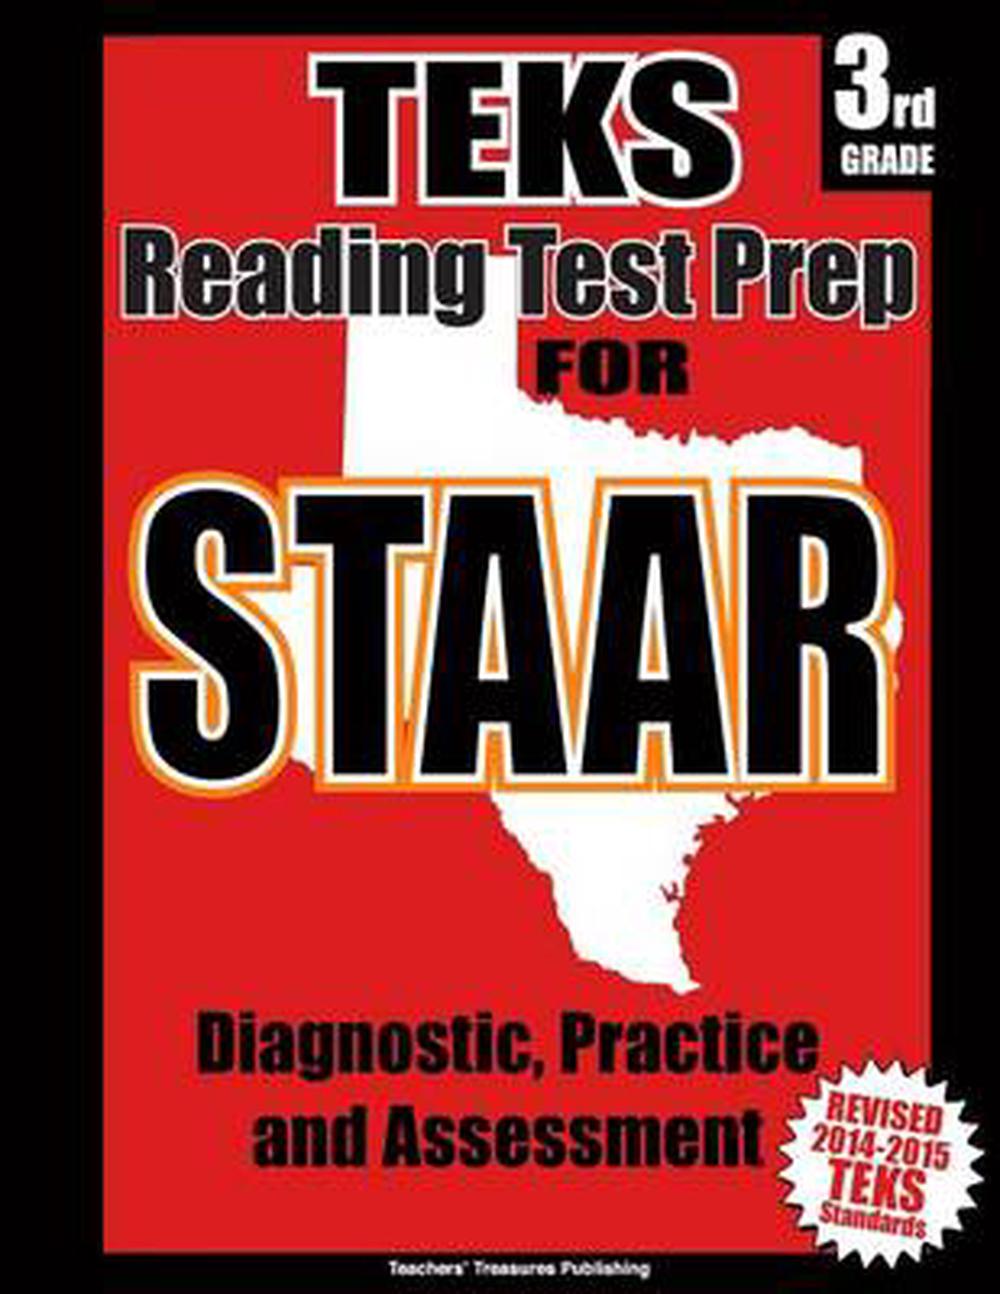 Teks 3rd Grade Reading Test Prep for Staar by Teachers' Treasures